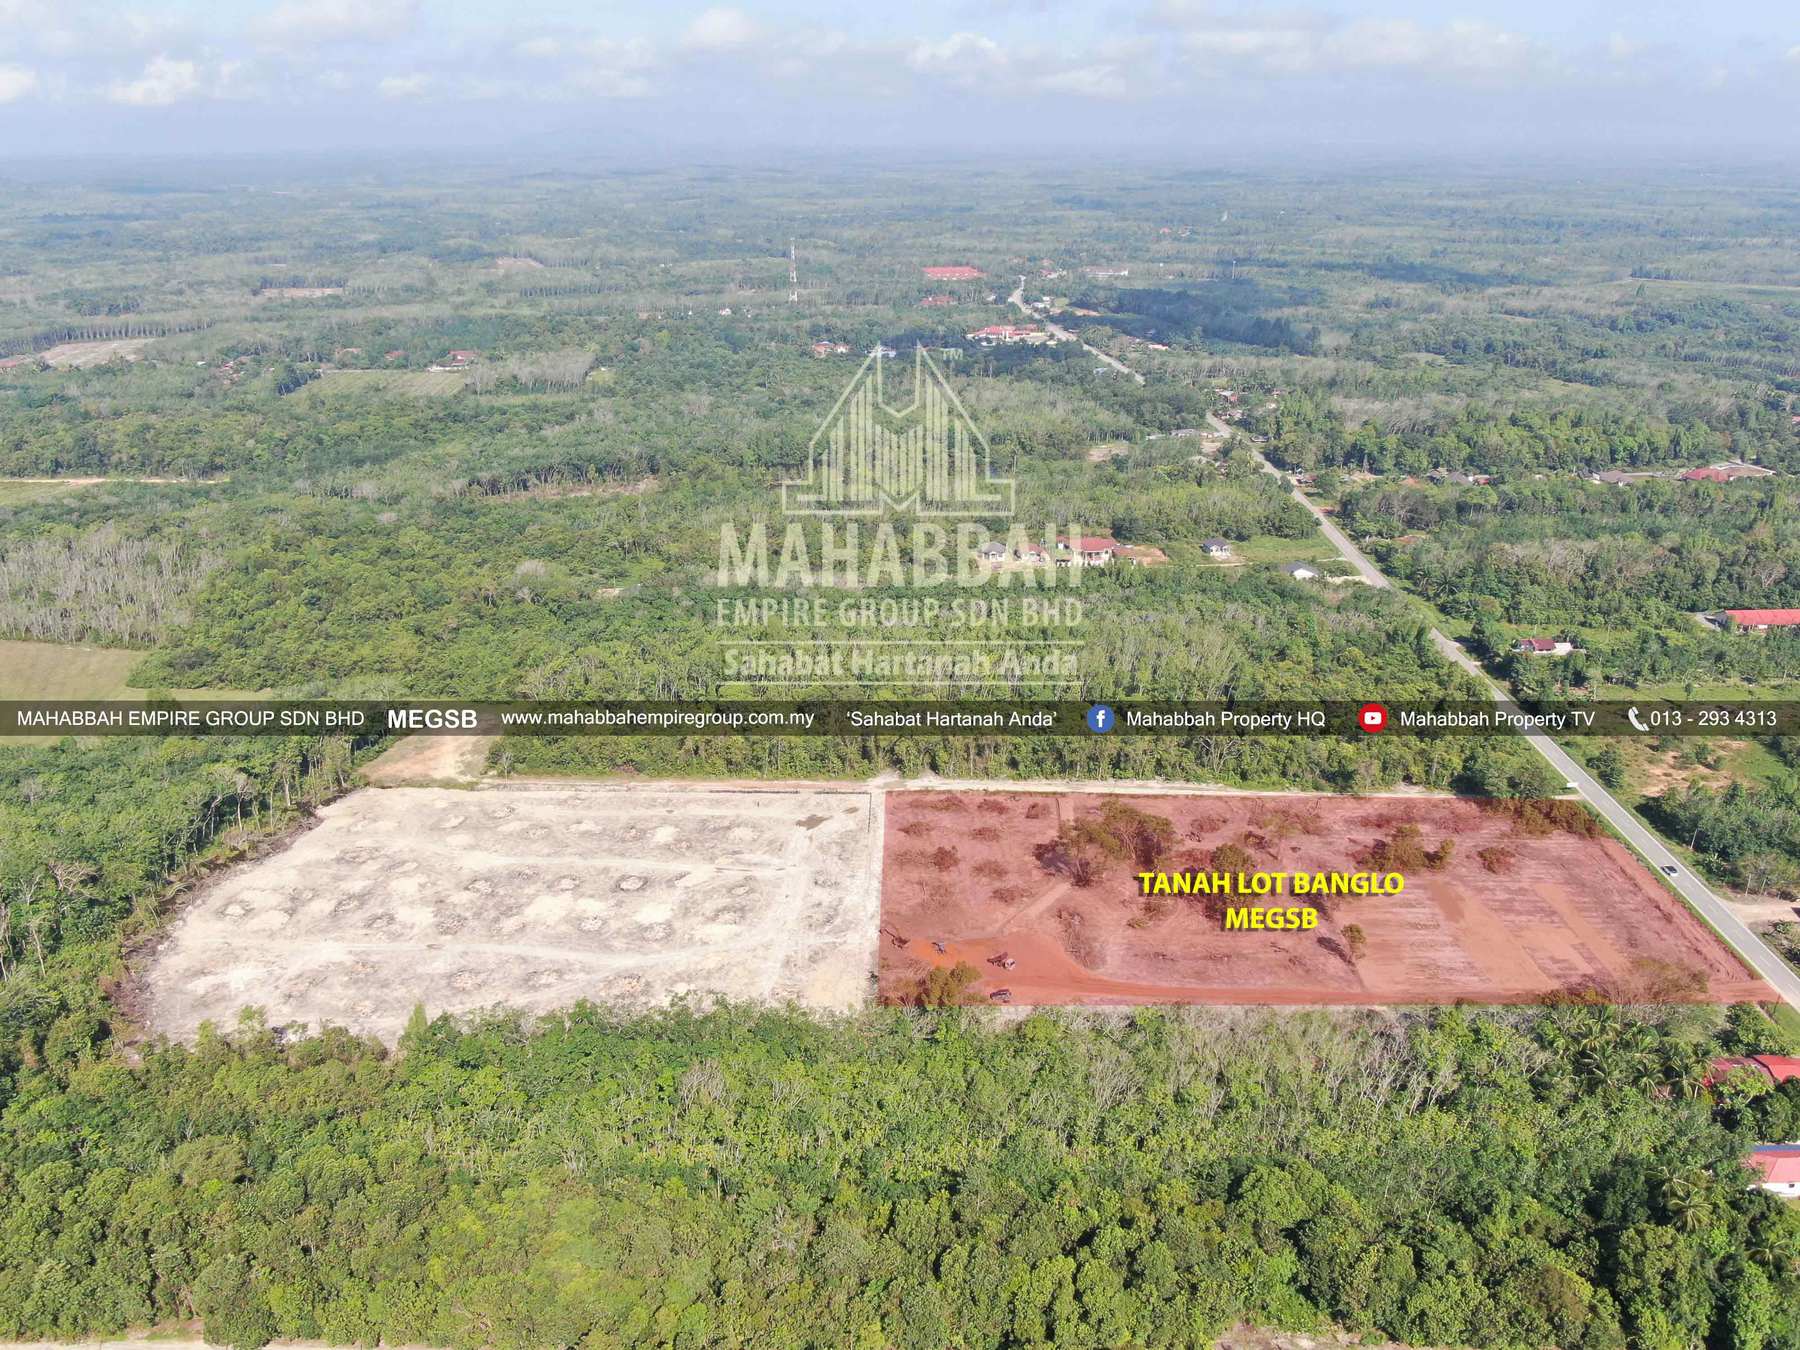 03 Tanah Lot Banglo Mampu Milik MEGSB Alor Pasir Tanah Merah (TM10)